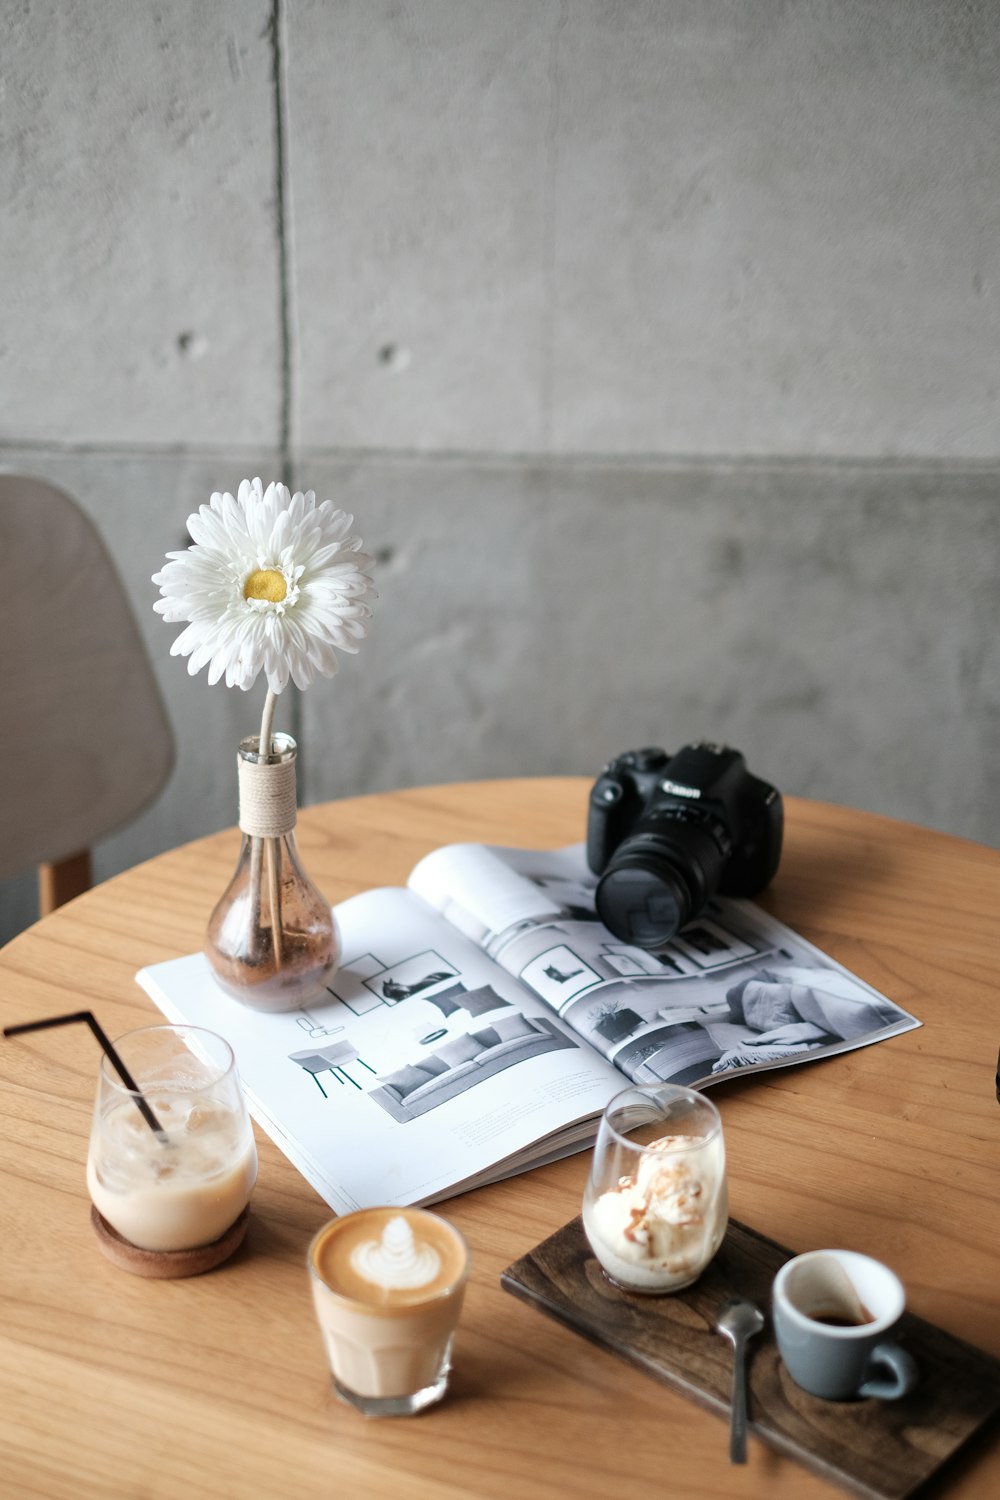 black Canon DSLR camera on white book beside white flower